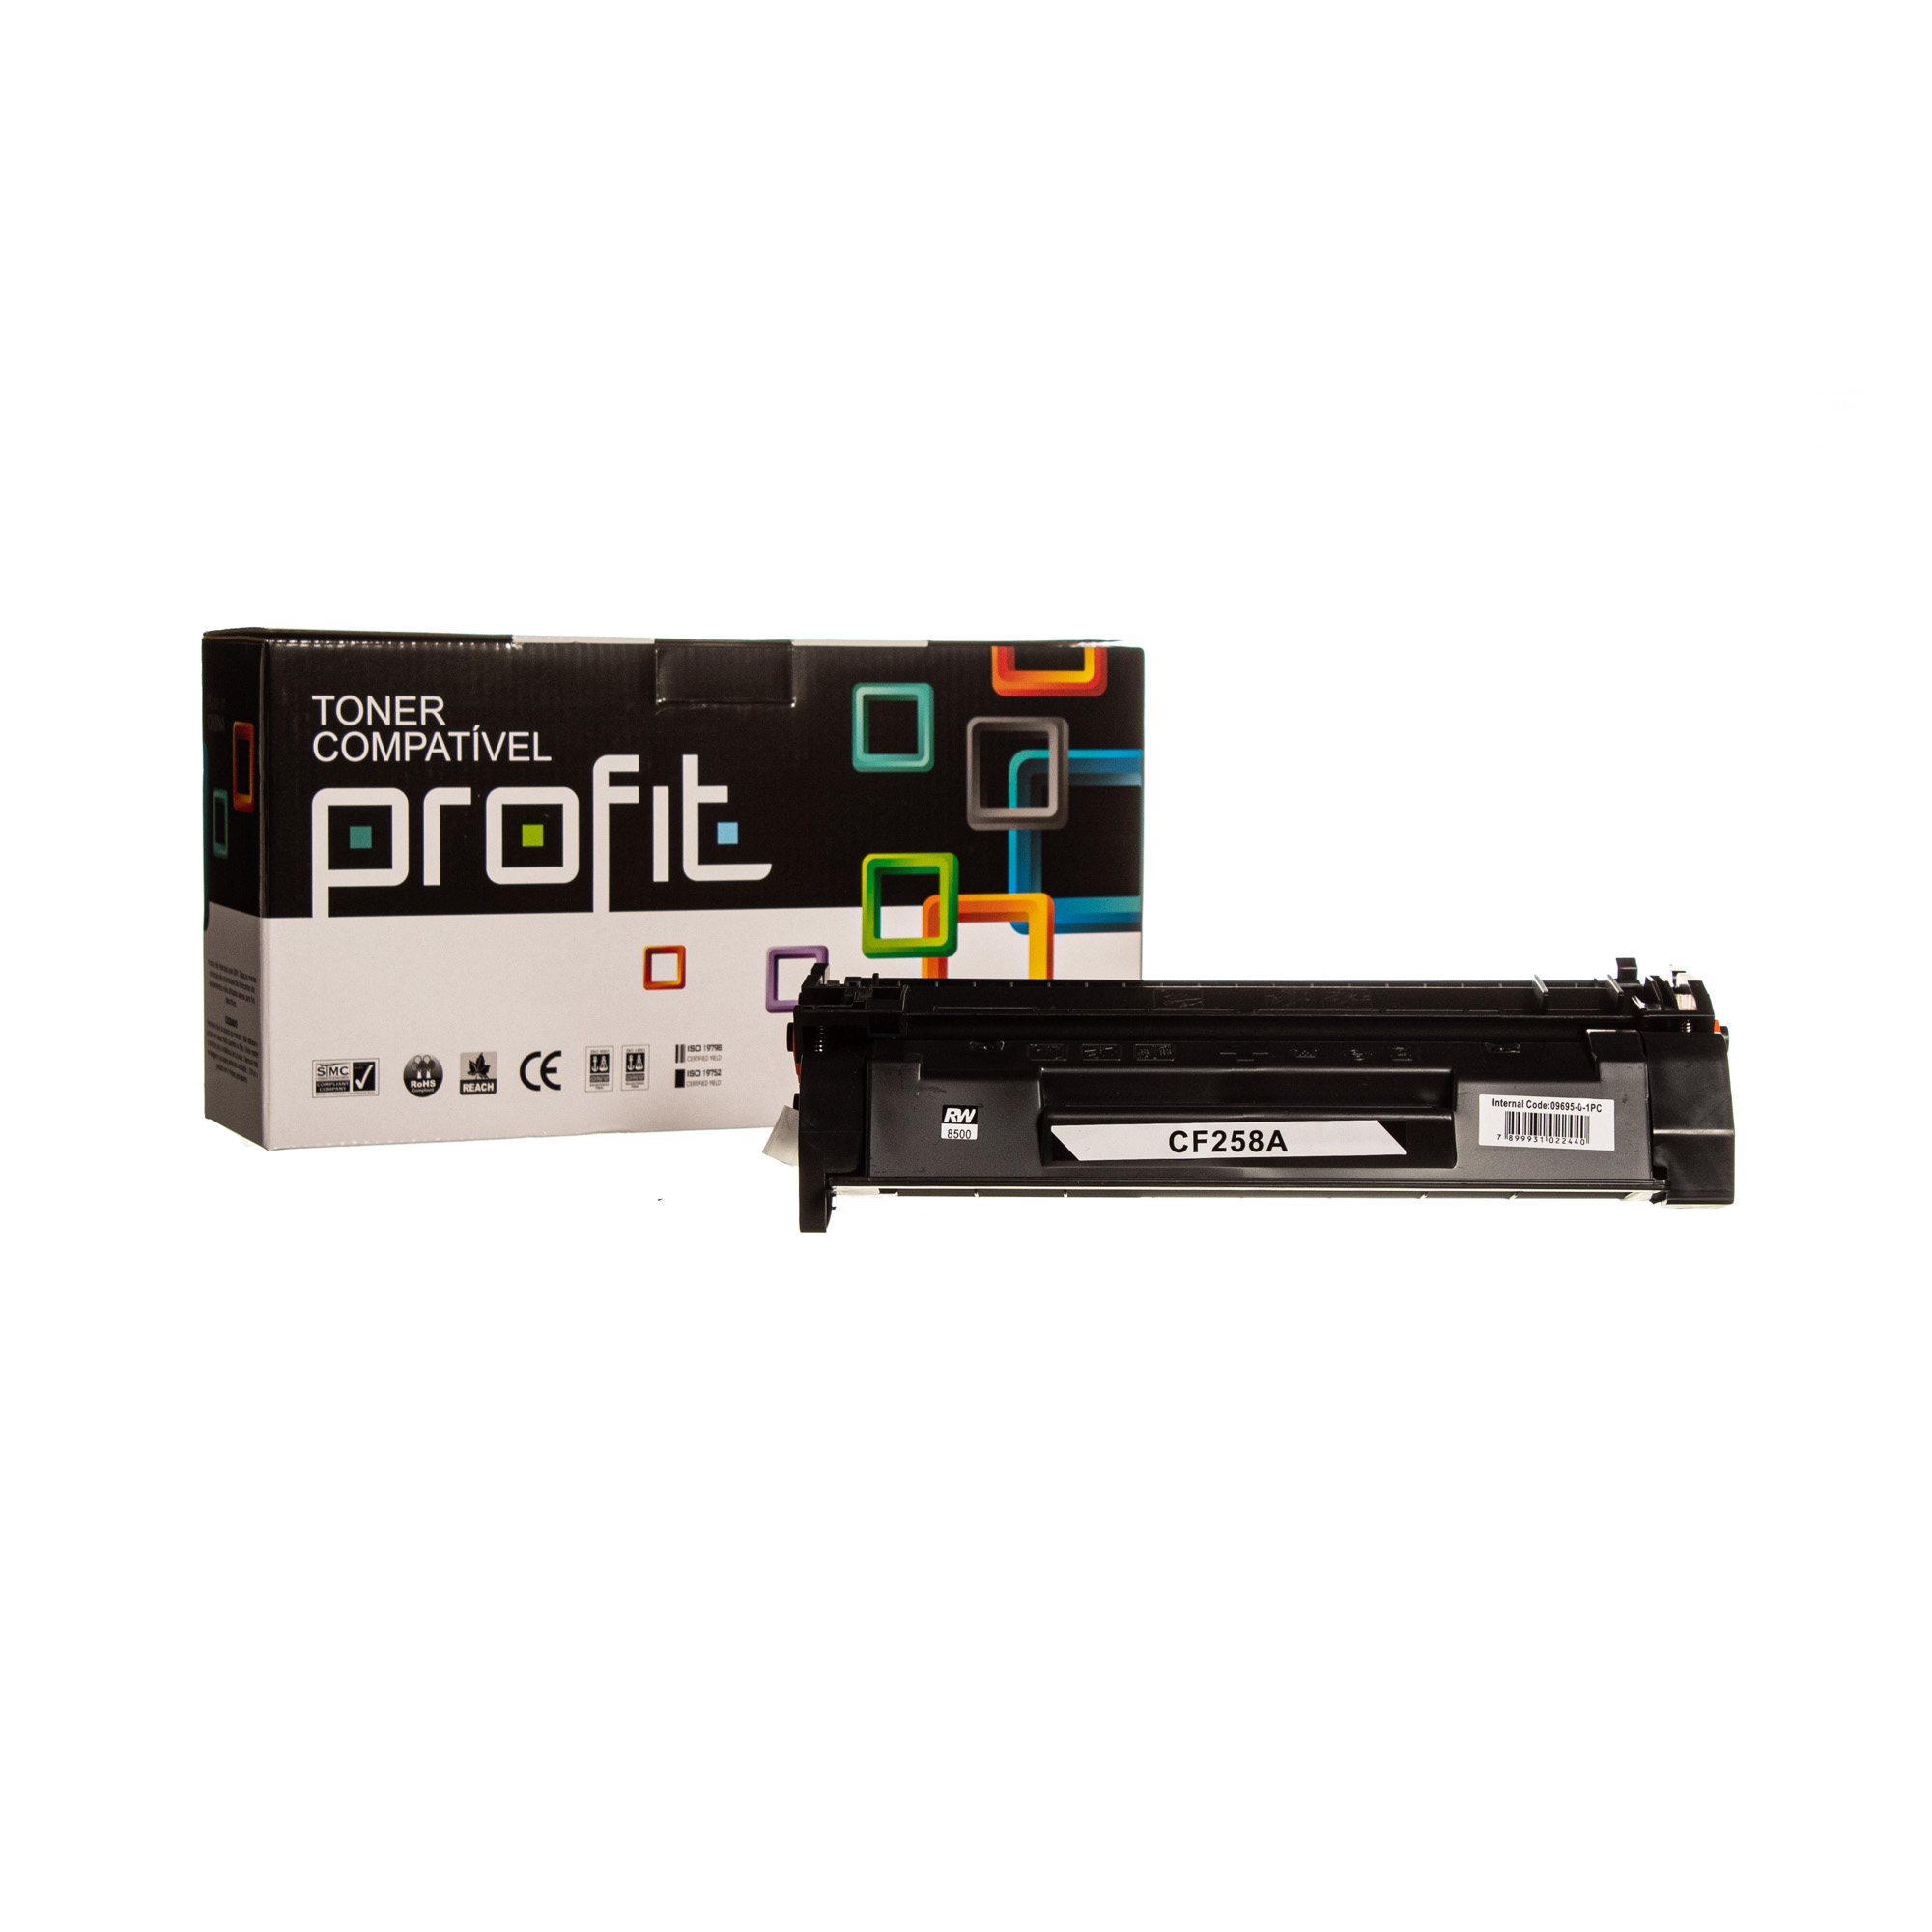 CART TONER HP CF258A - IKT - (3K) COMPATÍVEL PROFIT S/ CHIP